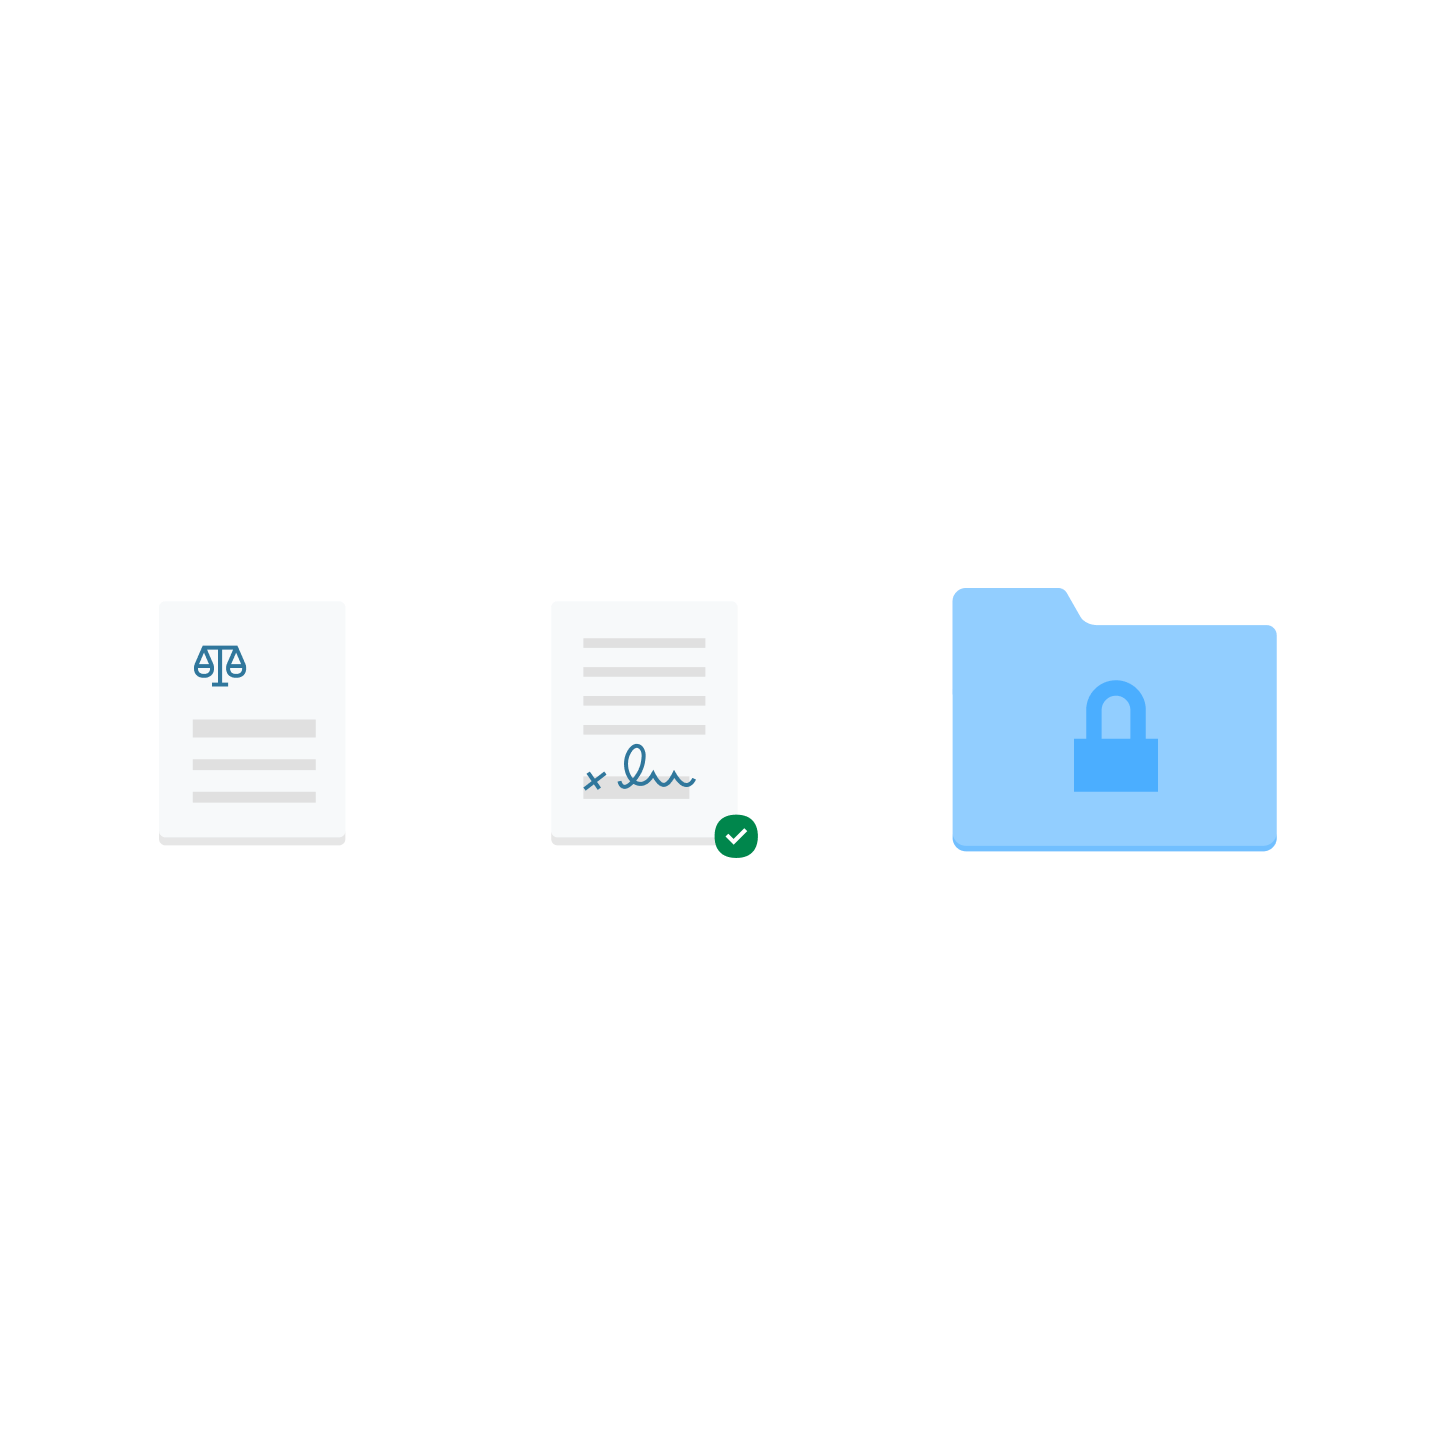 兩個文件圖示和一個上鎖的藍色檔案資料夾圖示